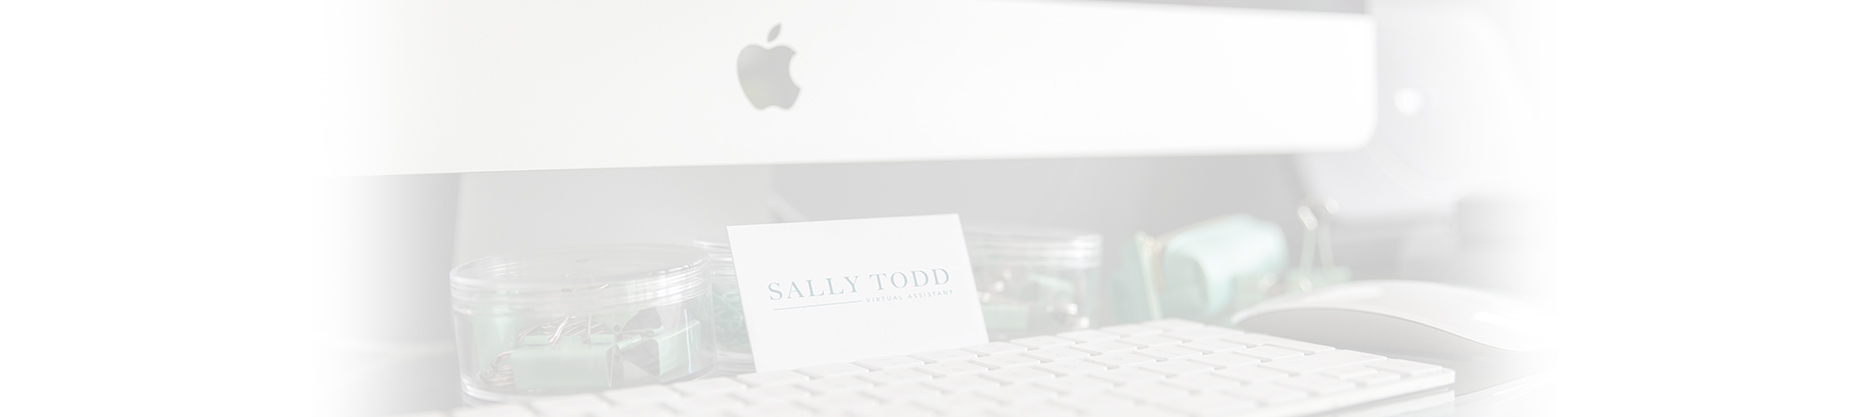 Sally Todd VA Homepage Slide